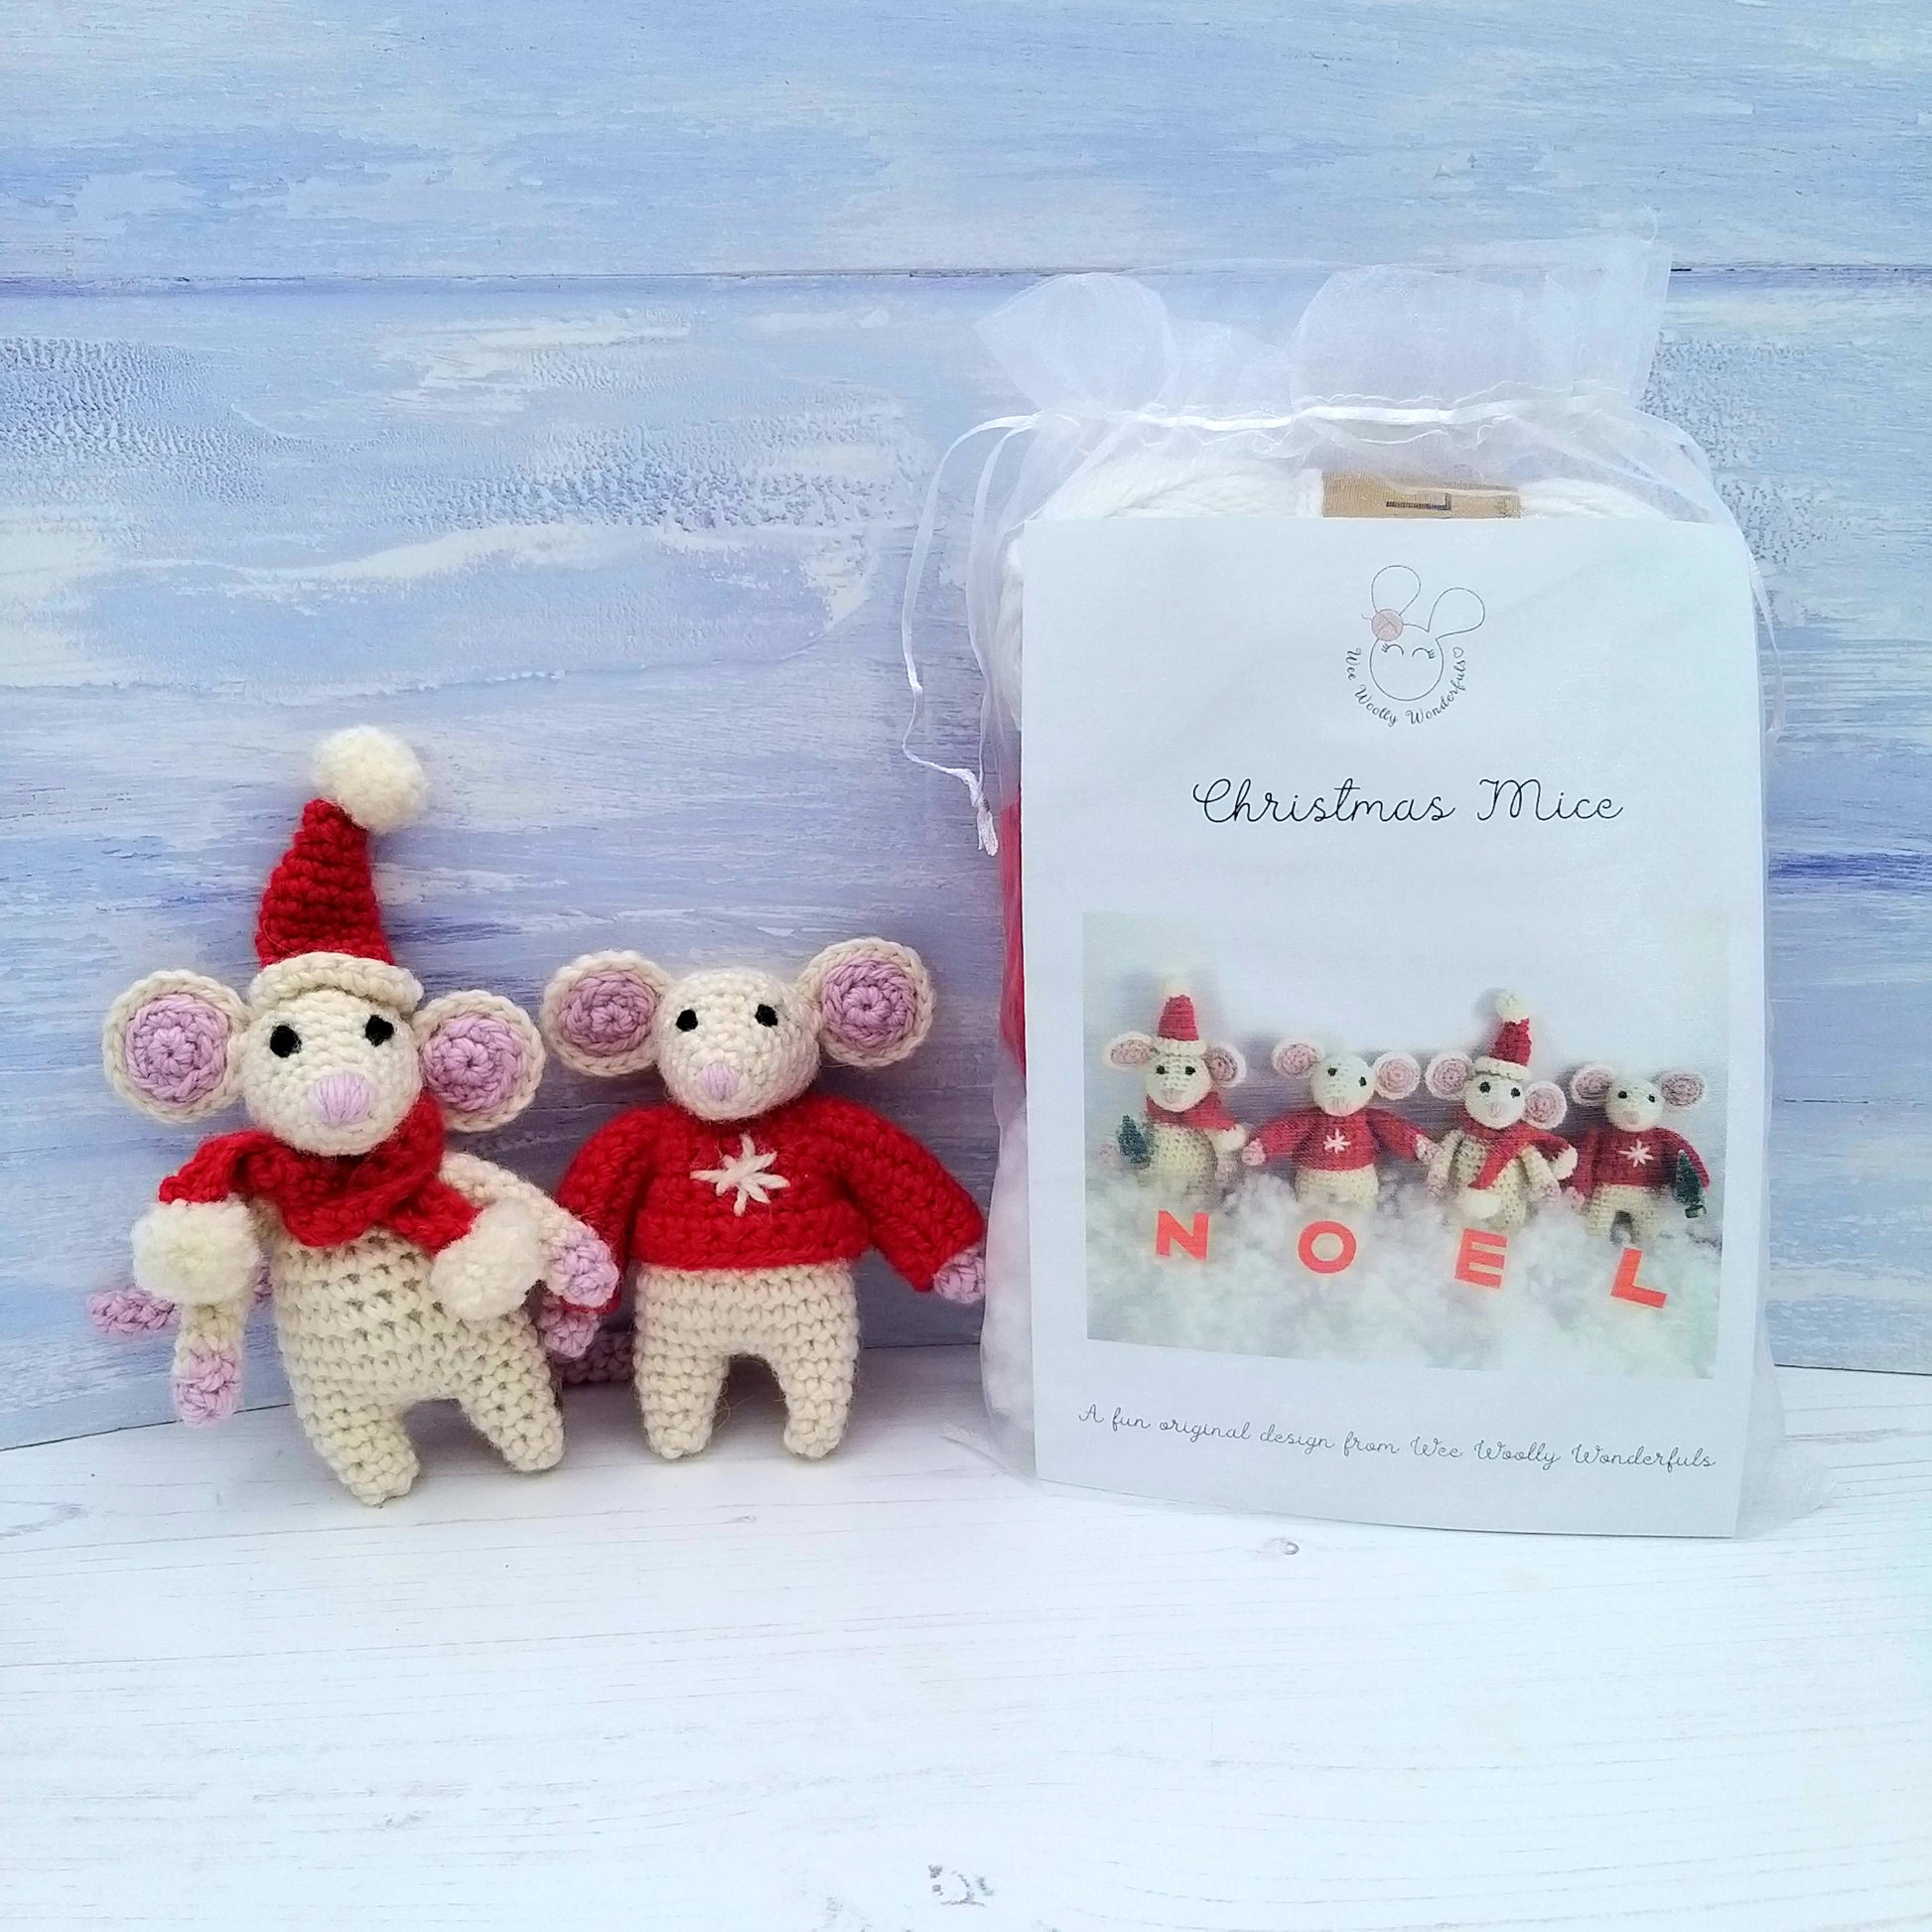 Festive Christmas Mice - Crochet Kit